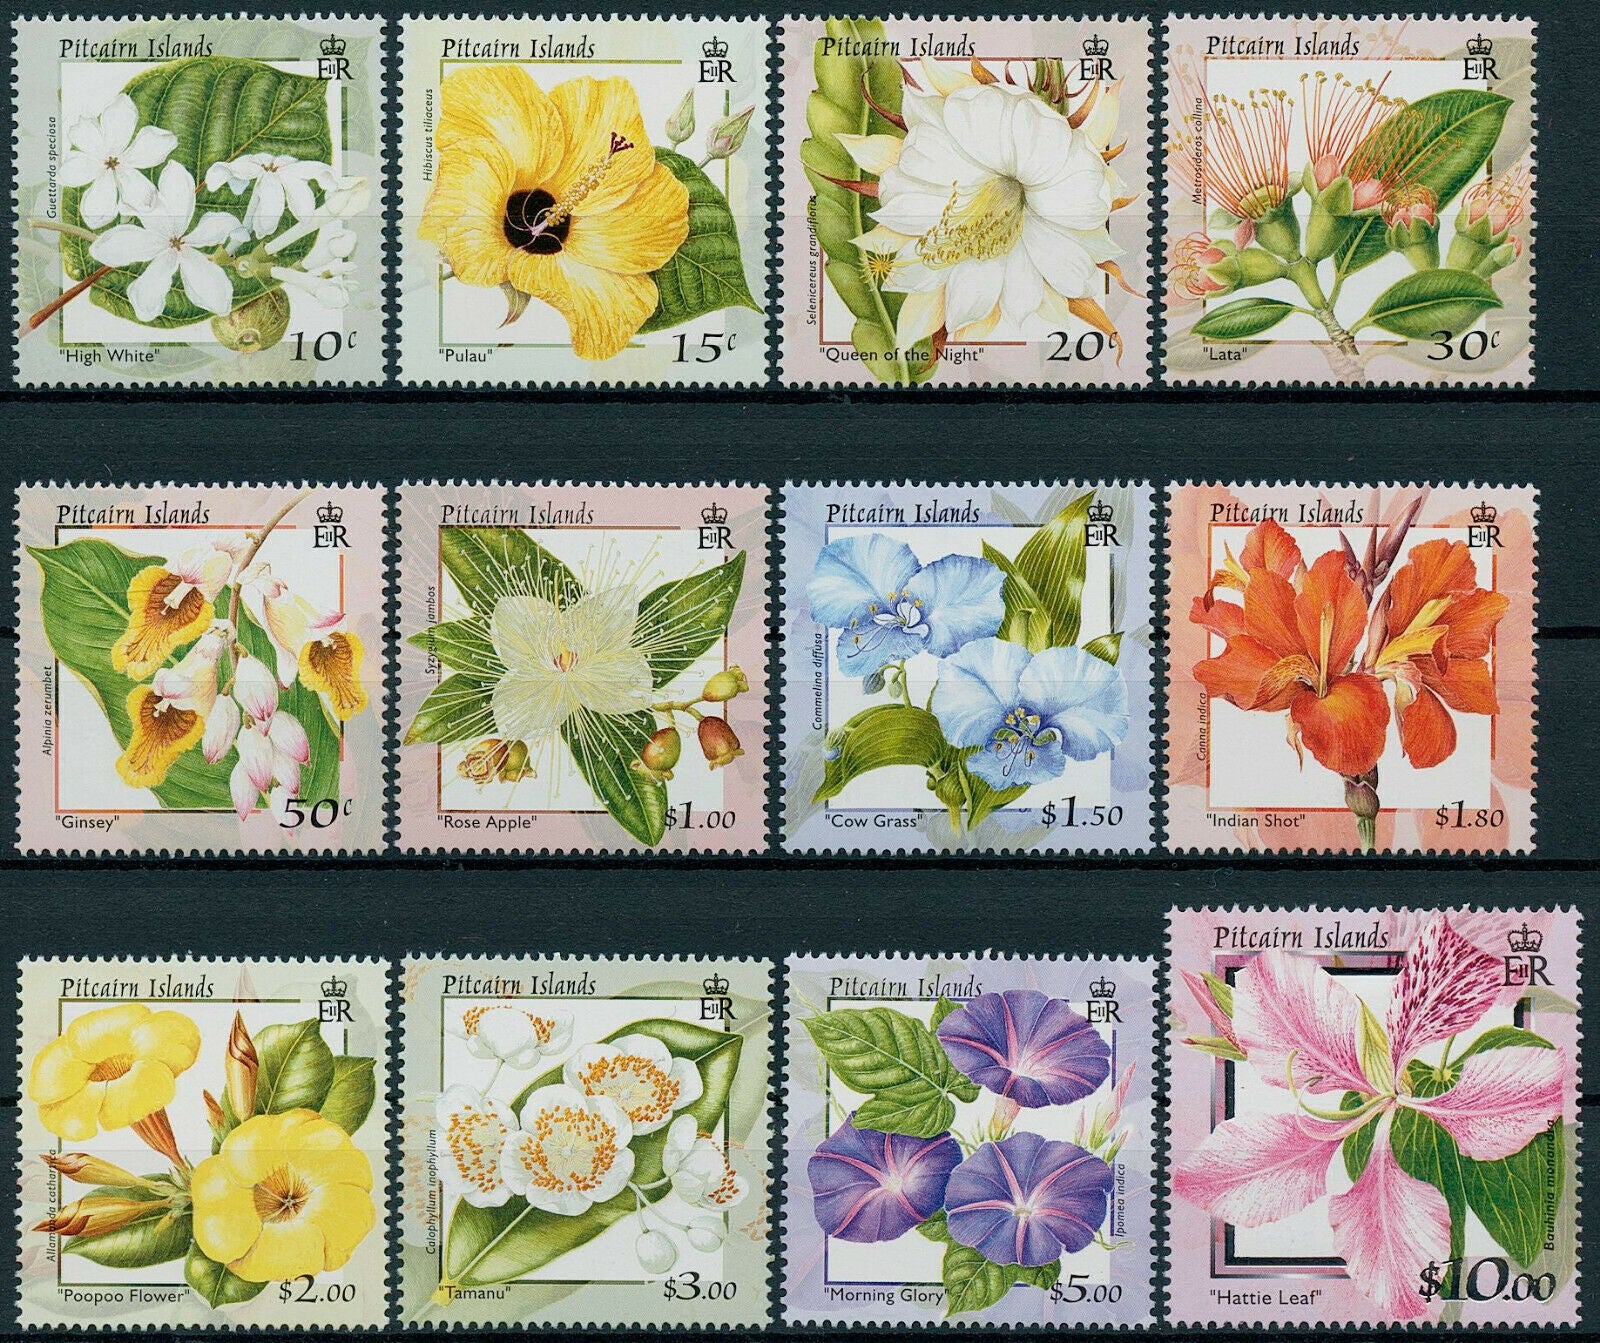 Pitcairn Islands 2000 MNH Flowers Stamps Hattie Leaf Lata Flora Nature 12v Set